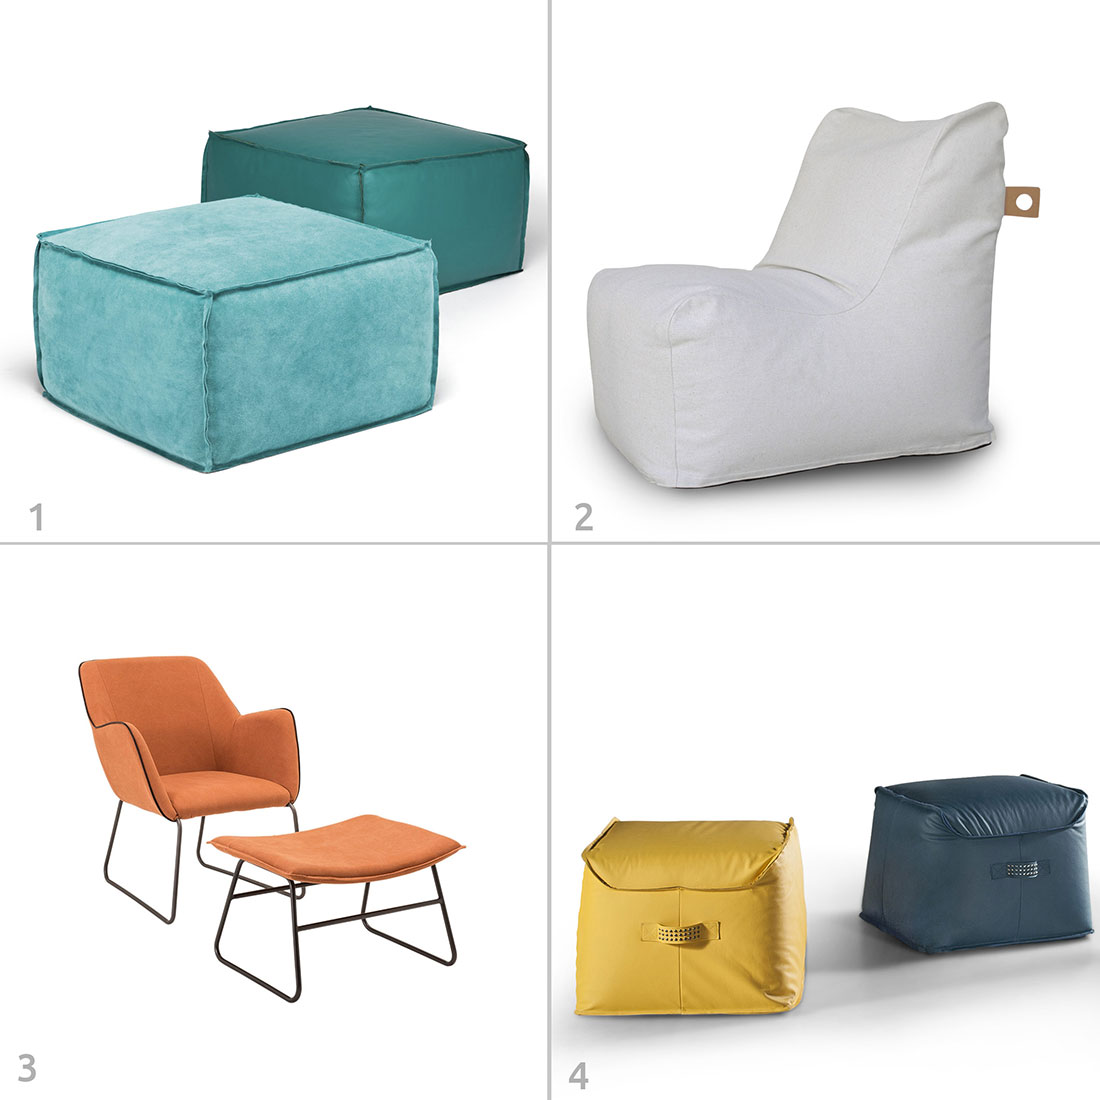 Alguns tipos de mobiliário mais informal da RS Design: 1. Pufe Nuova, 2. Pufe Palo Alto, 3. Poltrona Alada, Pufe Foggia